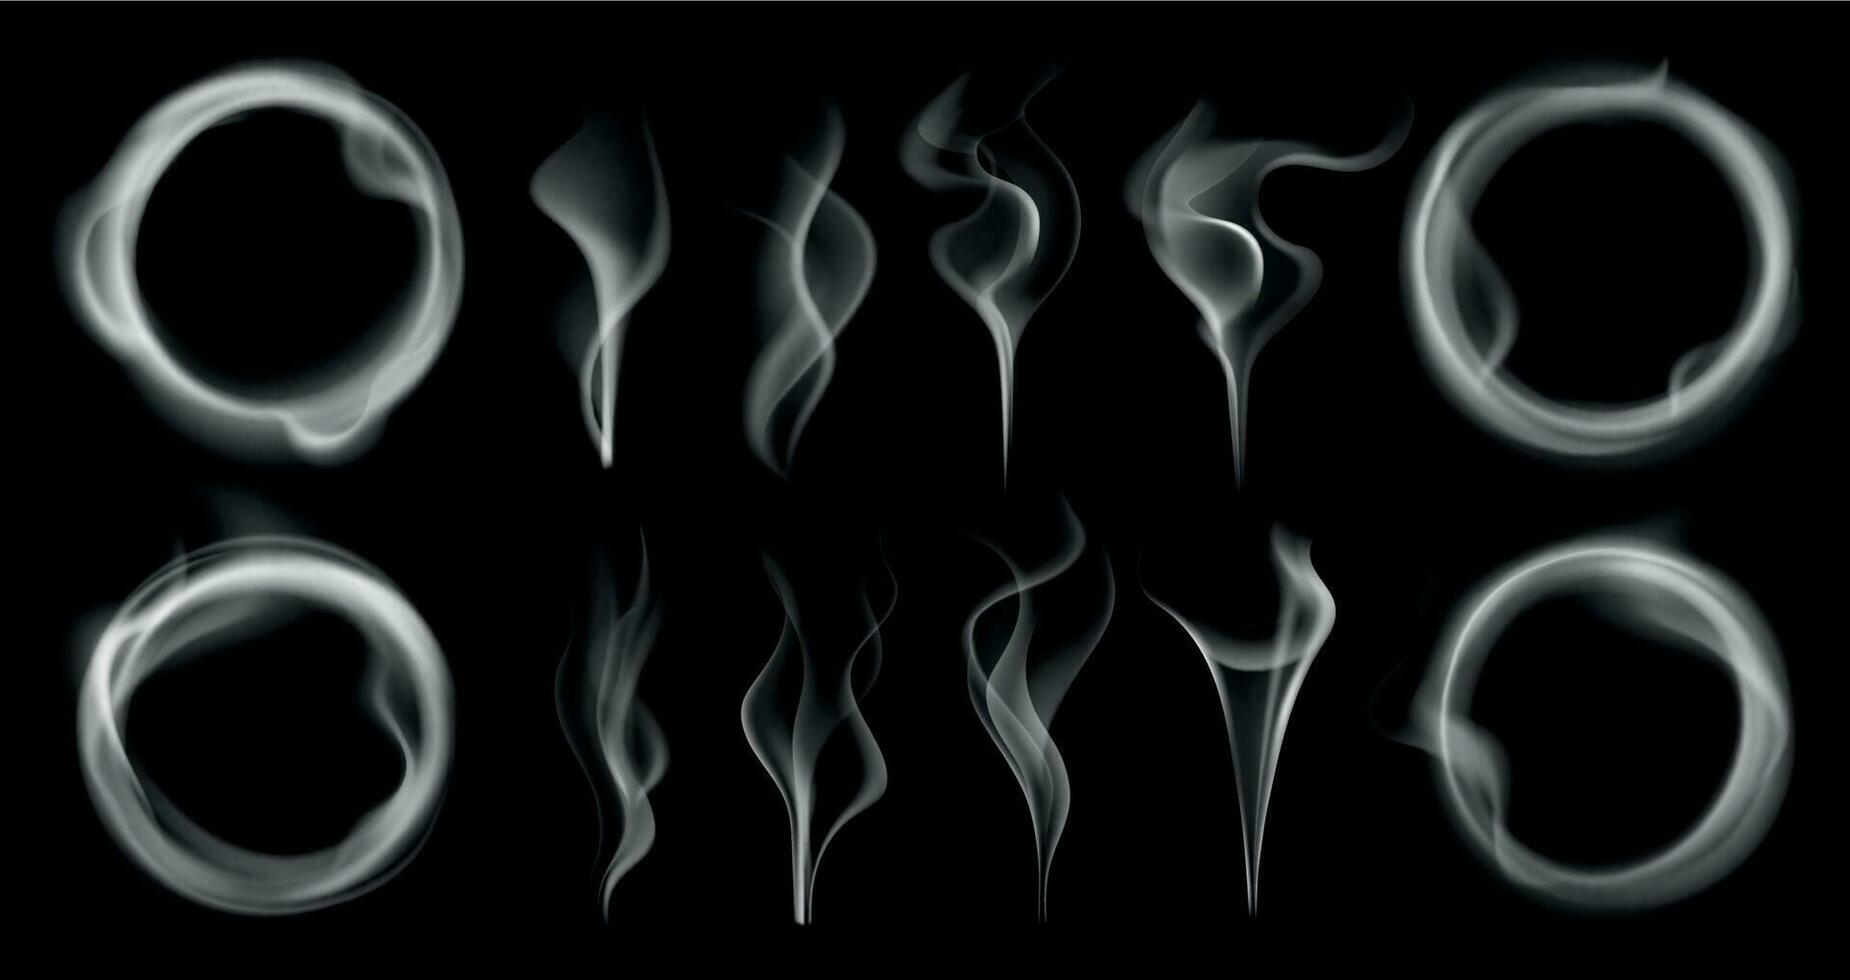 Dampf Rauch Formen. Rauchen Dampf Ströme, dämpfen vaping Ring und Dampf Wellen durchscheinend realistisch 3d bewirken isoliert Vektor einstellen